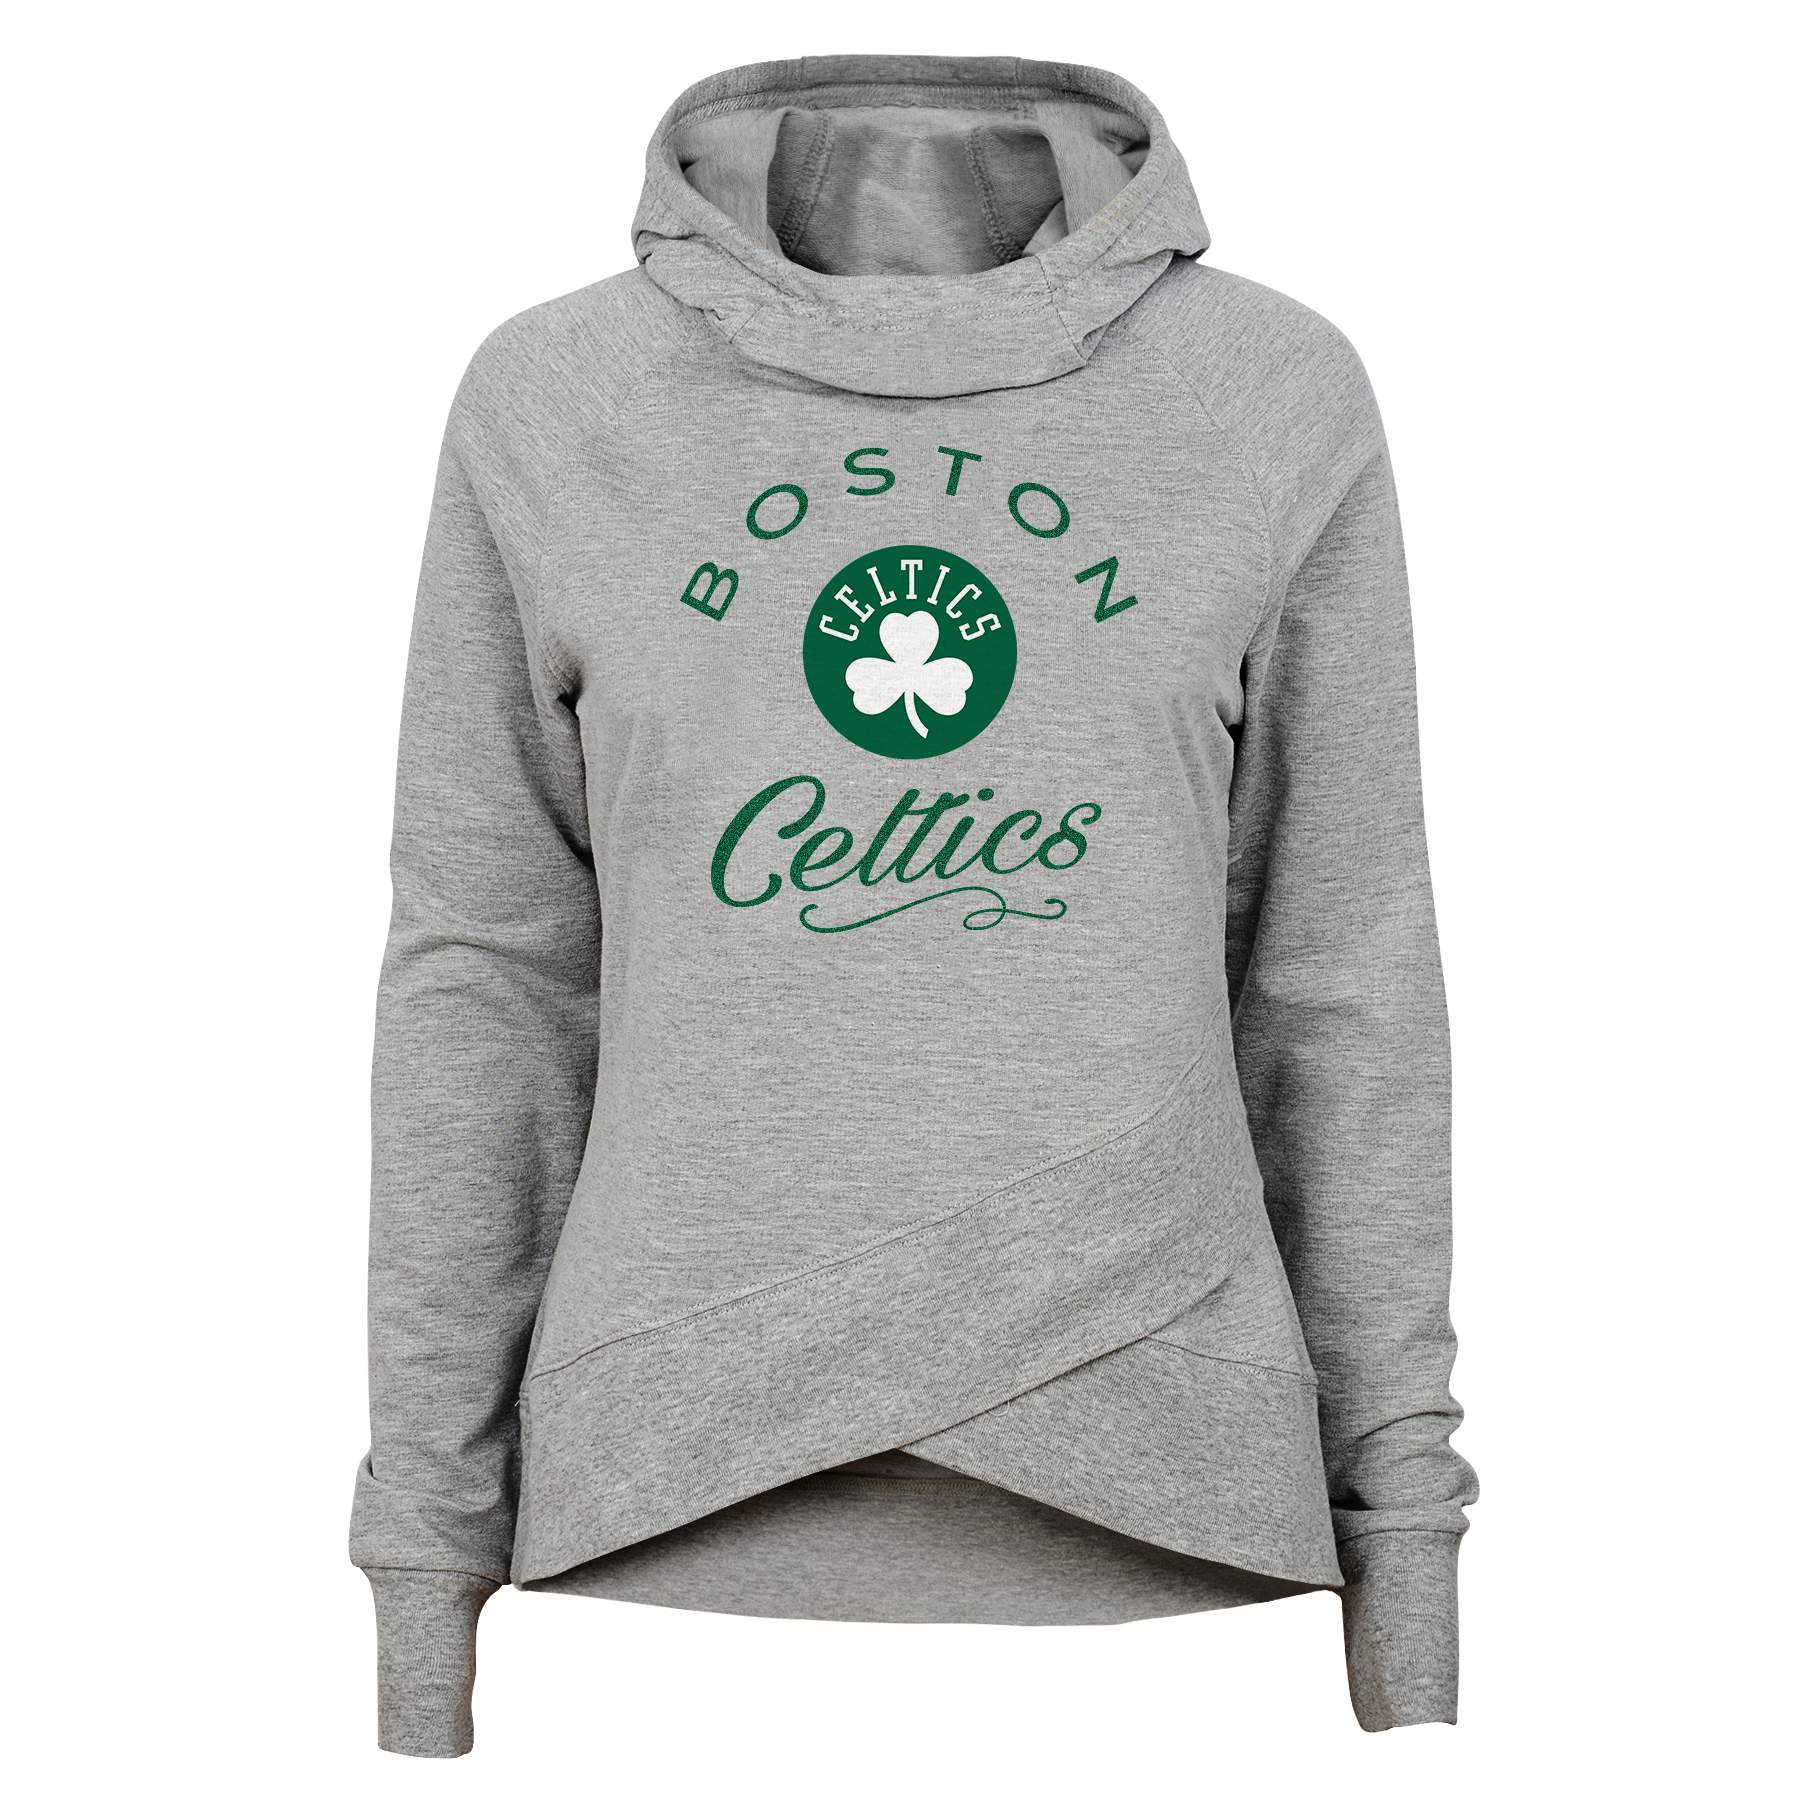 celtics hoodie